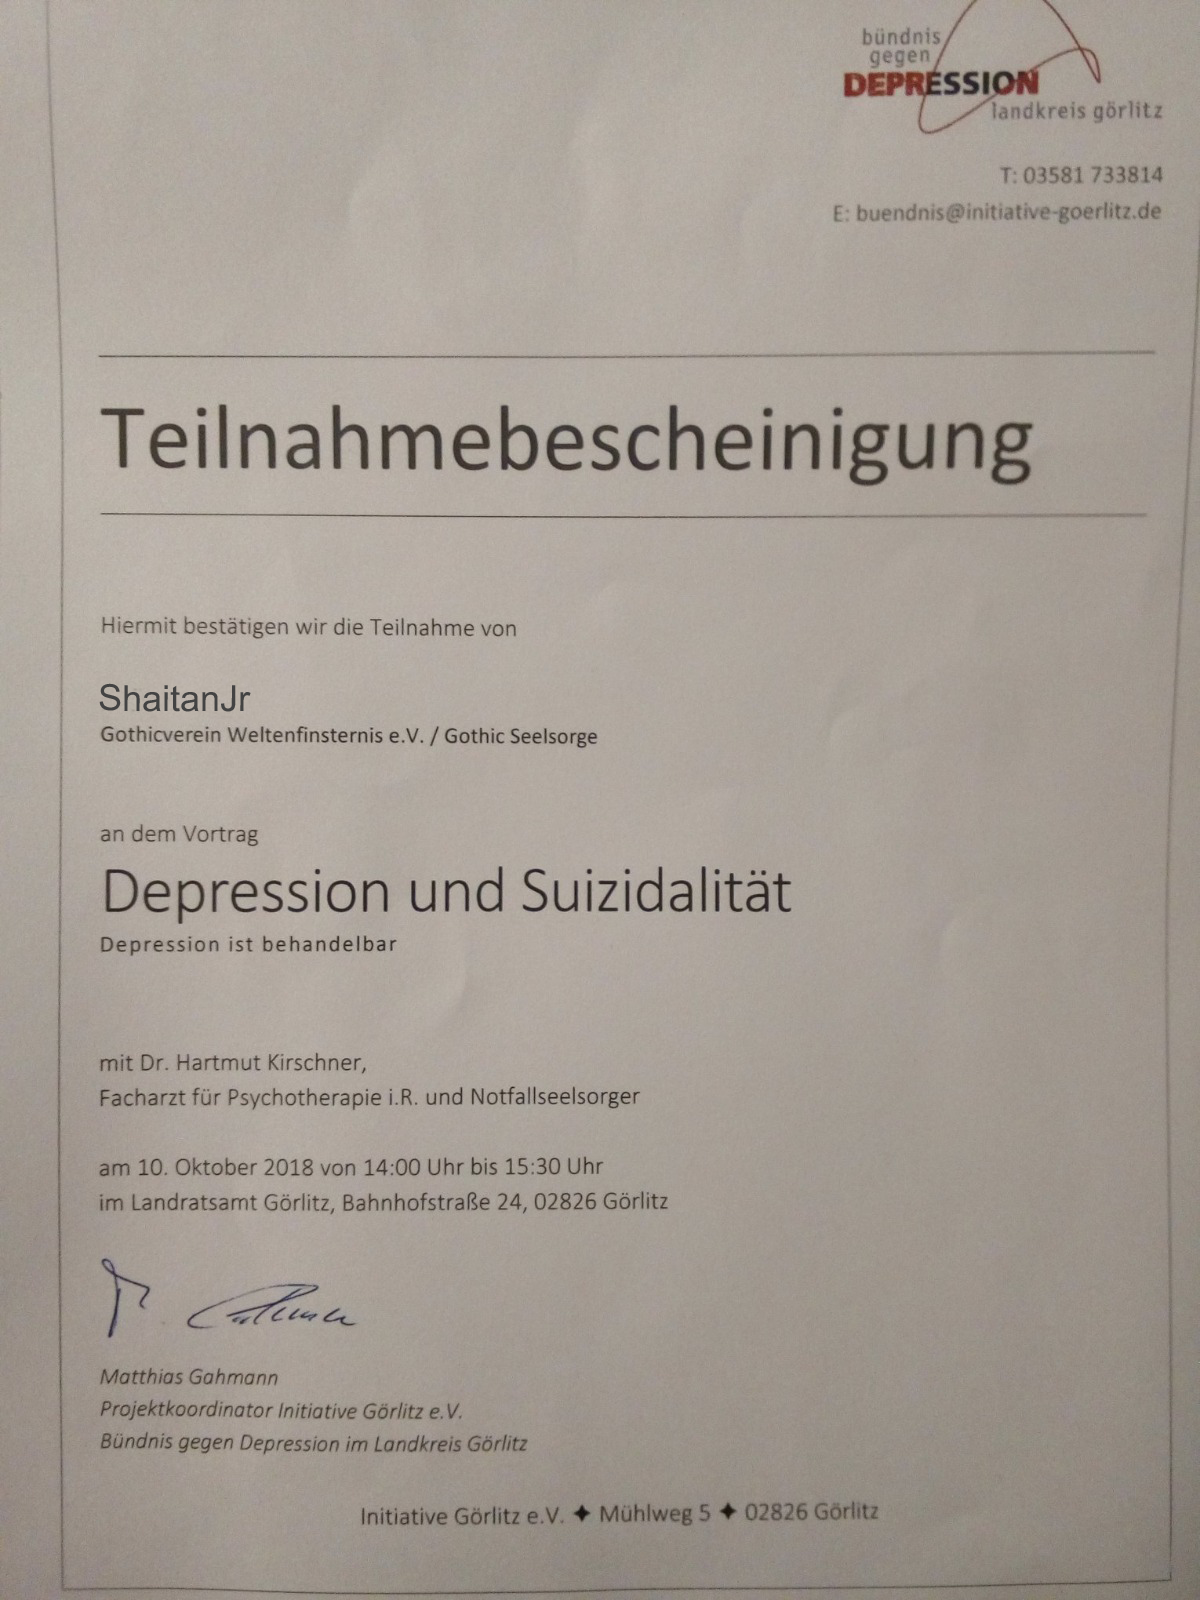 Teilnahmebescheinigung für ShaitanJr beim Vortrag Depression und Suizidalität